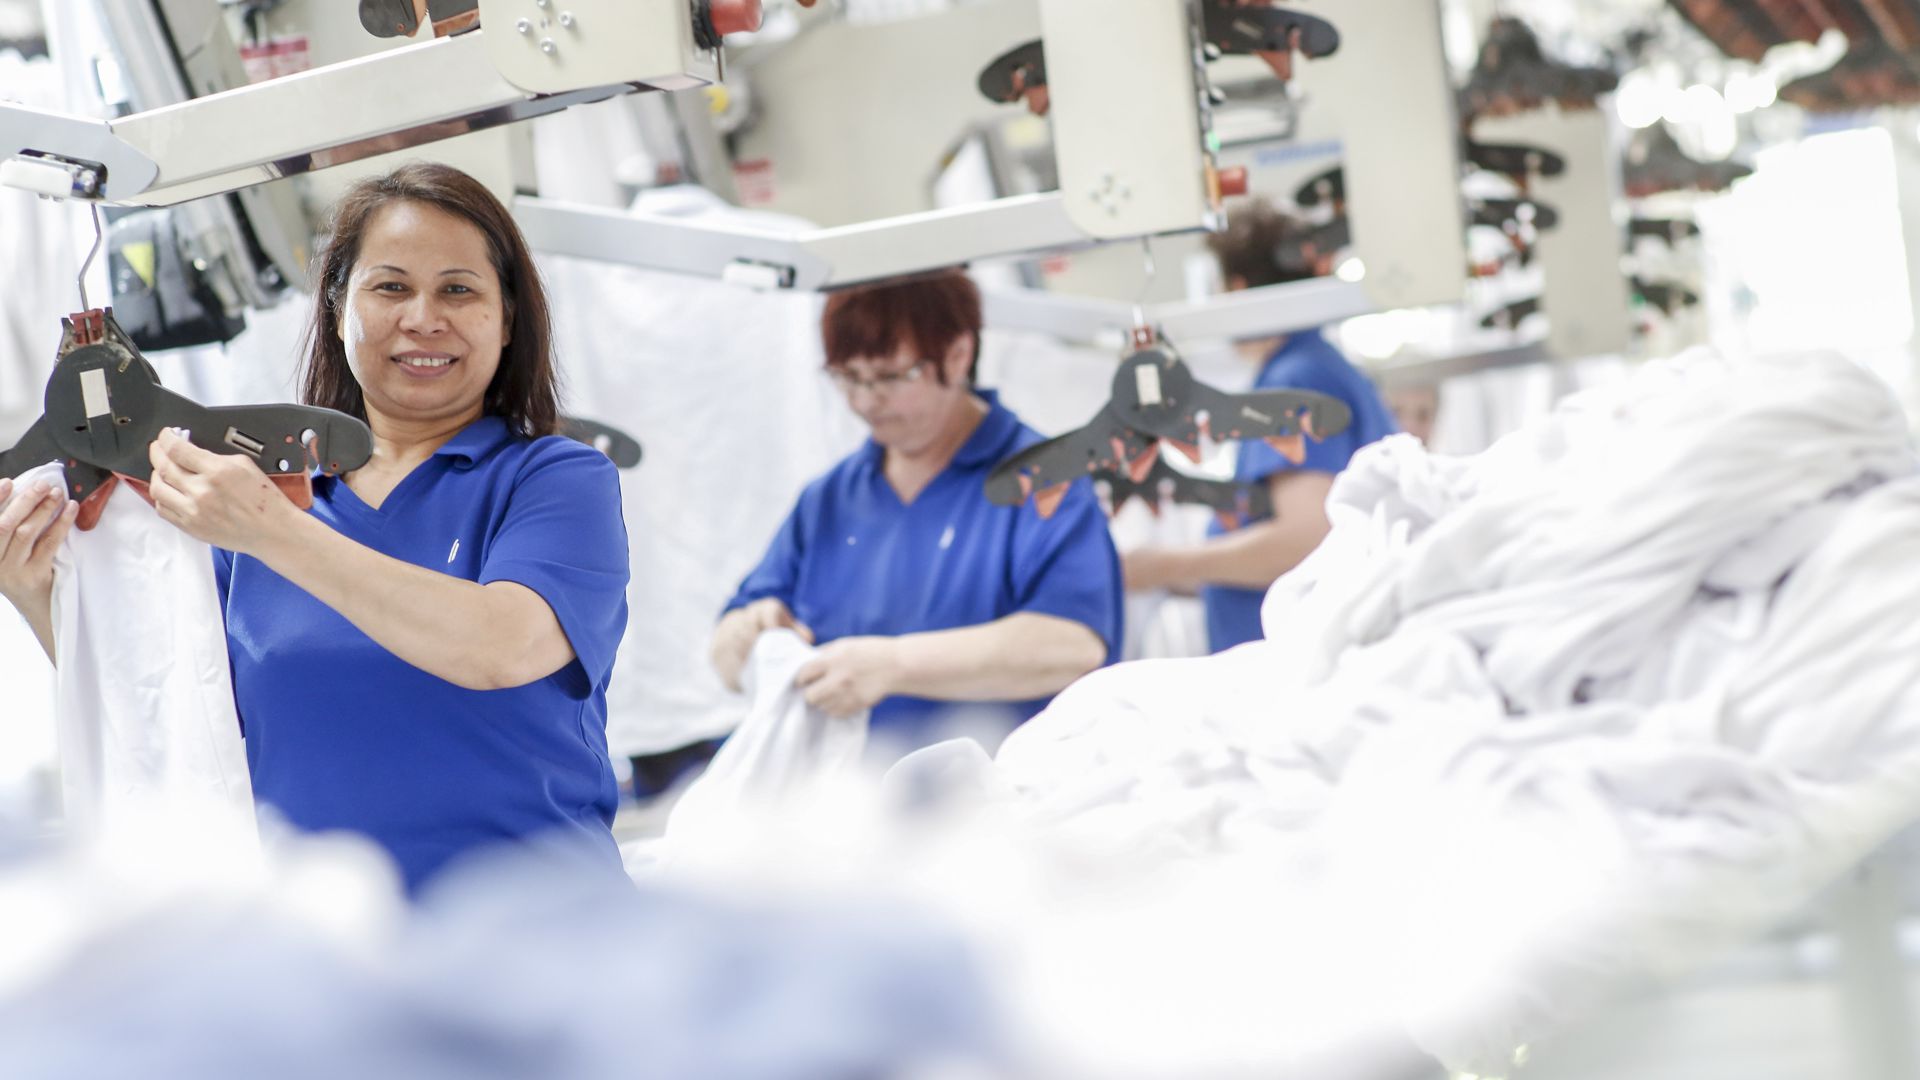 Ettlinger Textildienstleister Bardusch Setzt In Der Pandemie Auf Sterile Kleidung